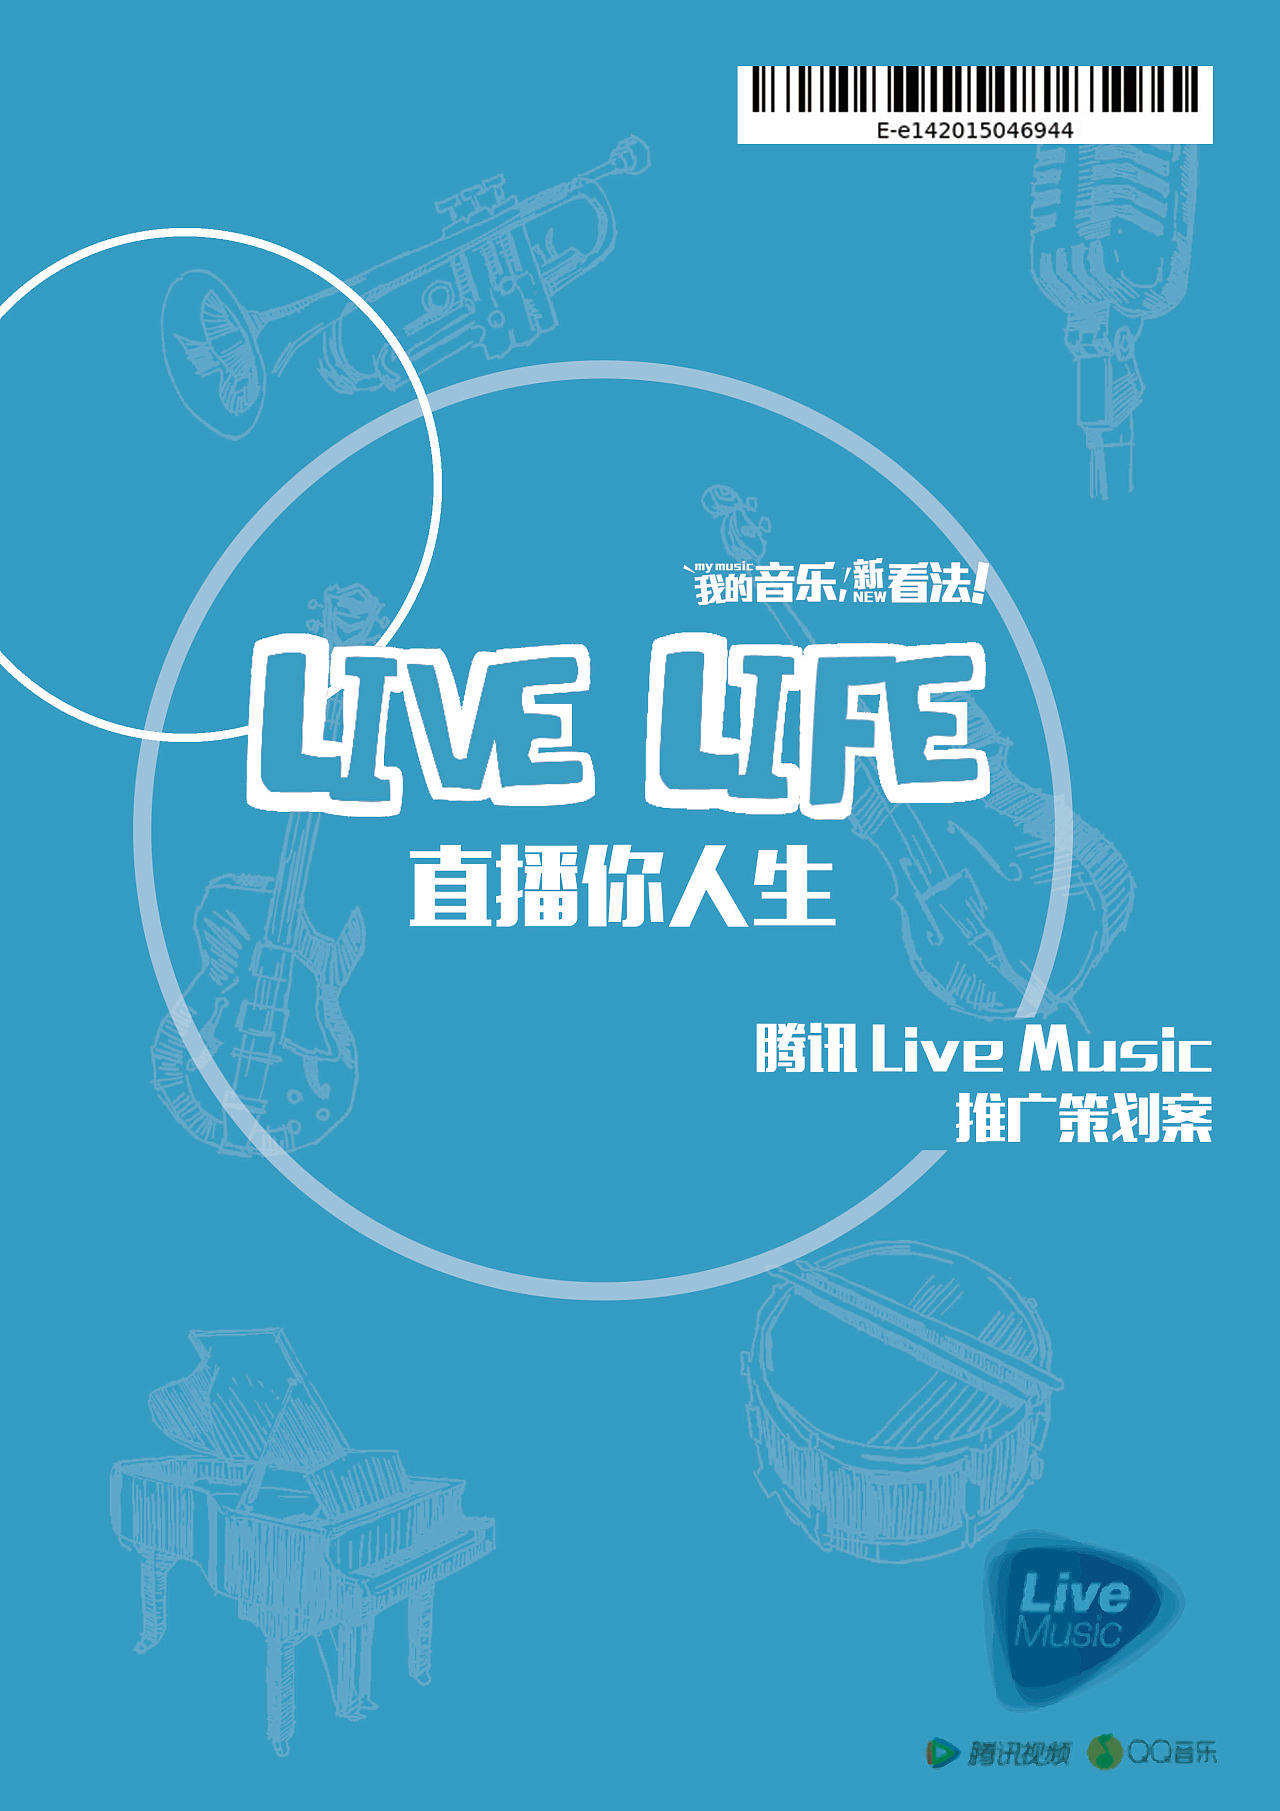 2015年秋季赛学院奖 腾讯live music策划案 live